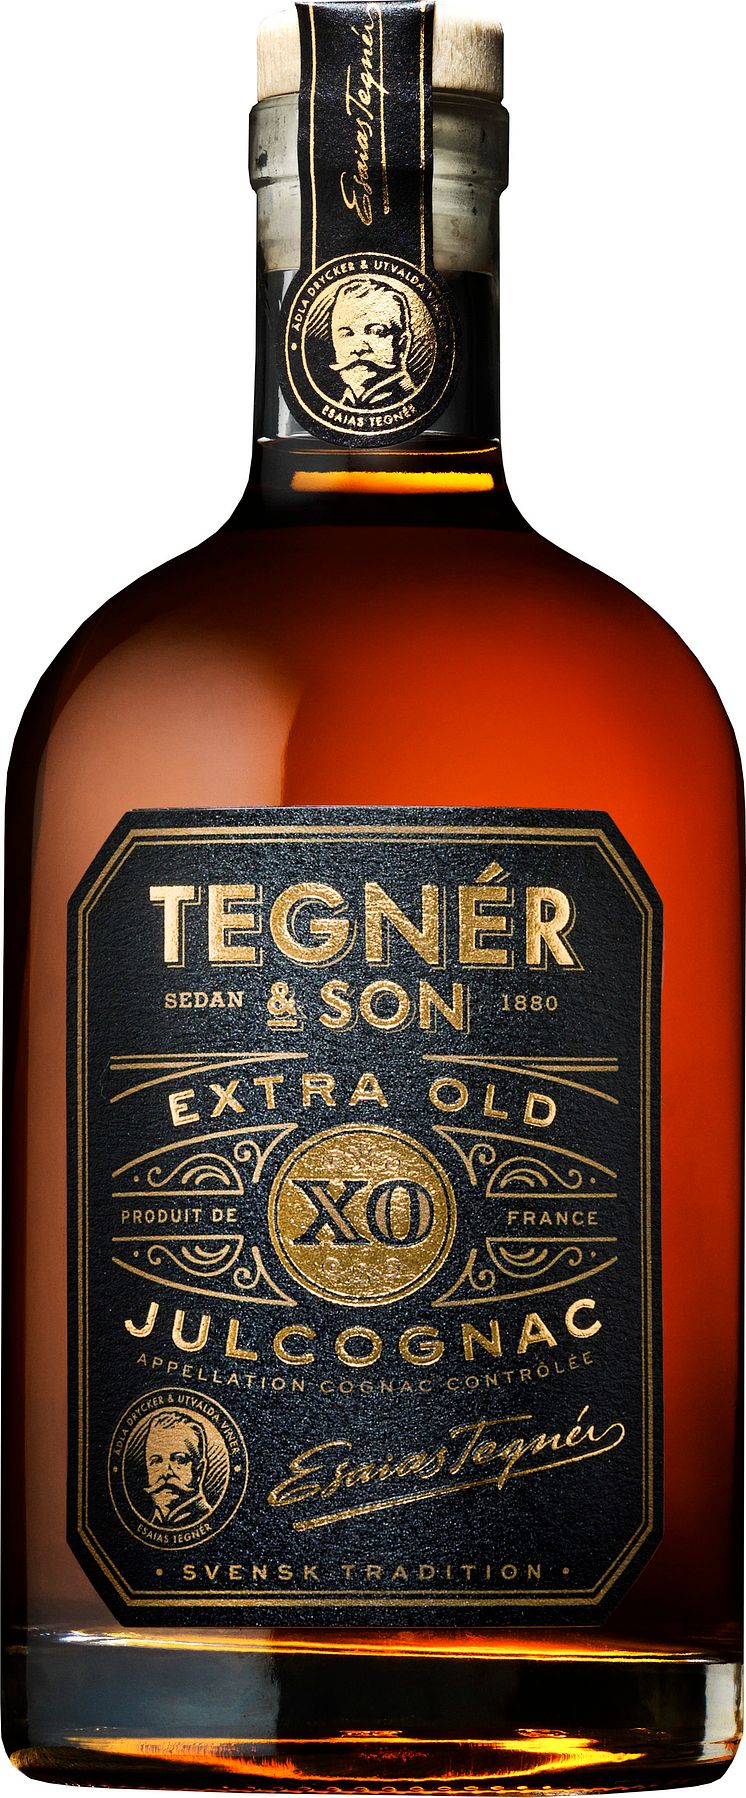 Tegnér & Son Extra Old Julcognac